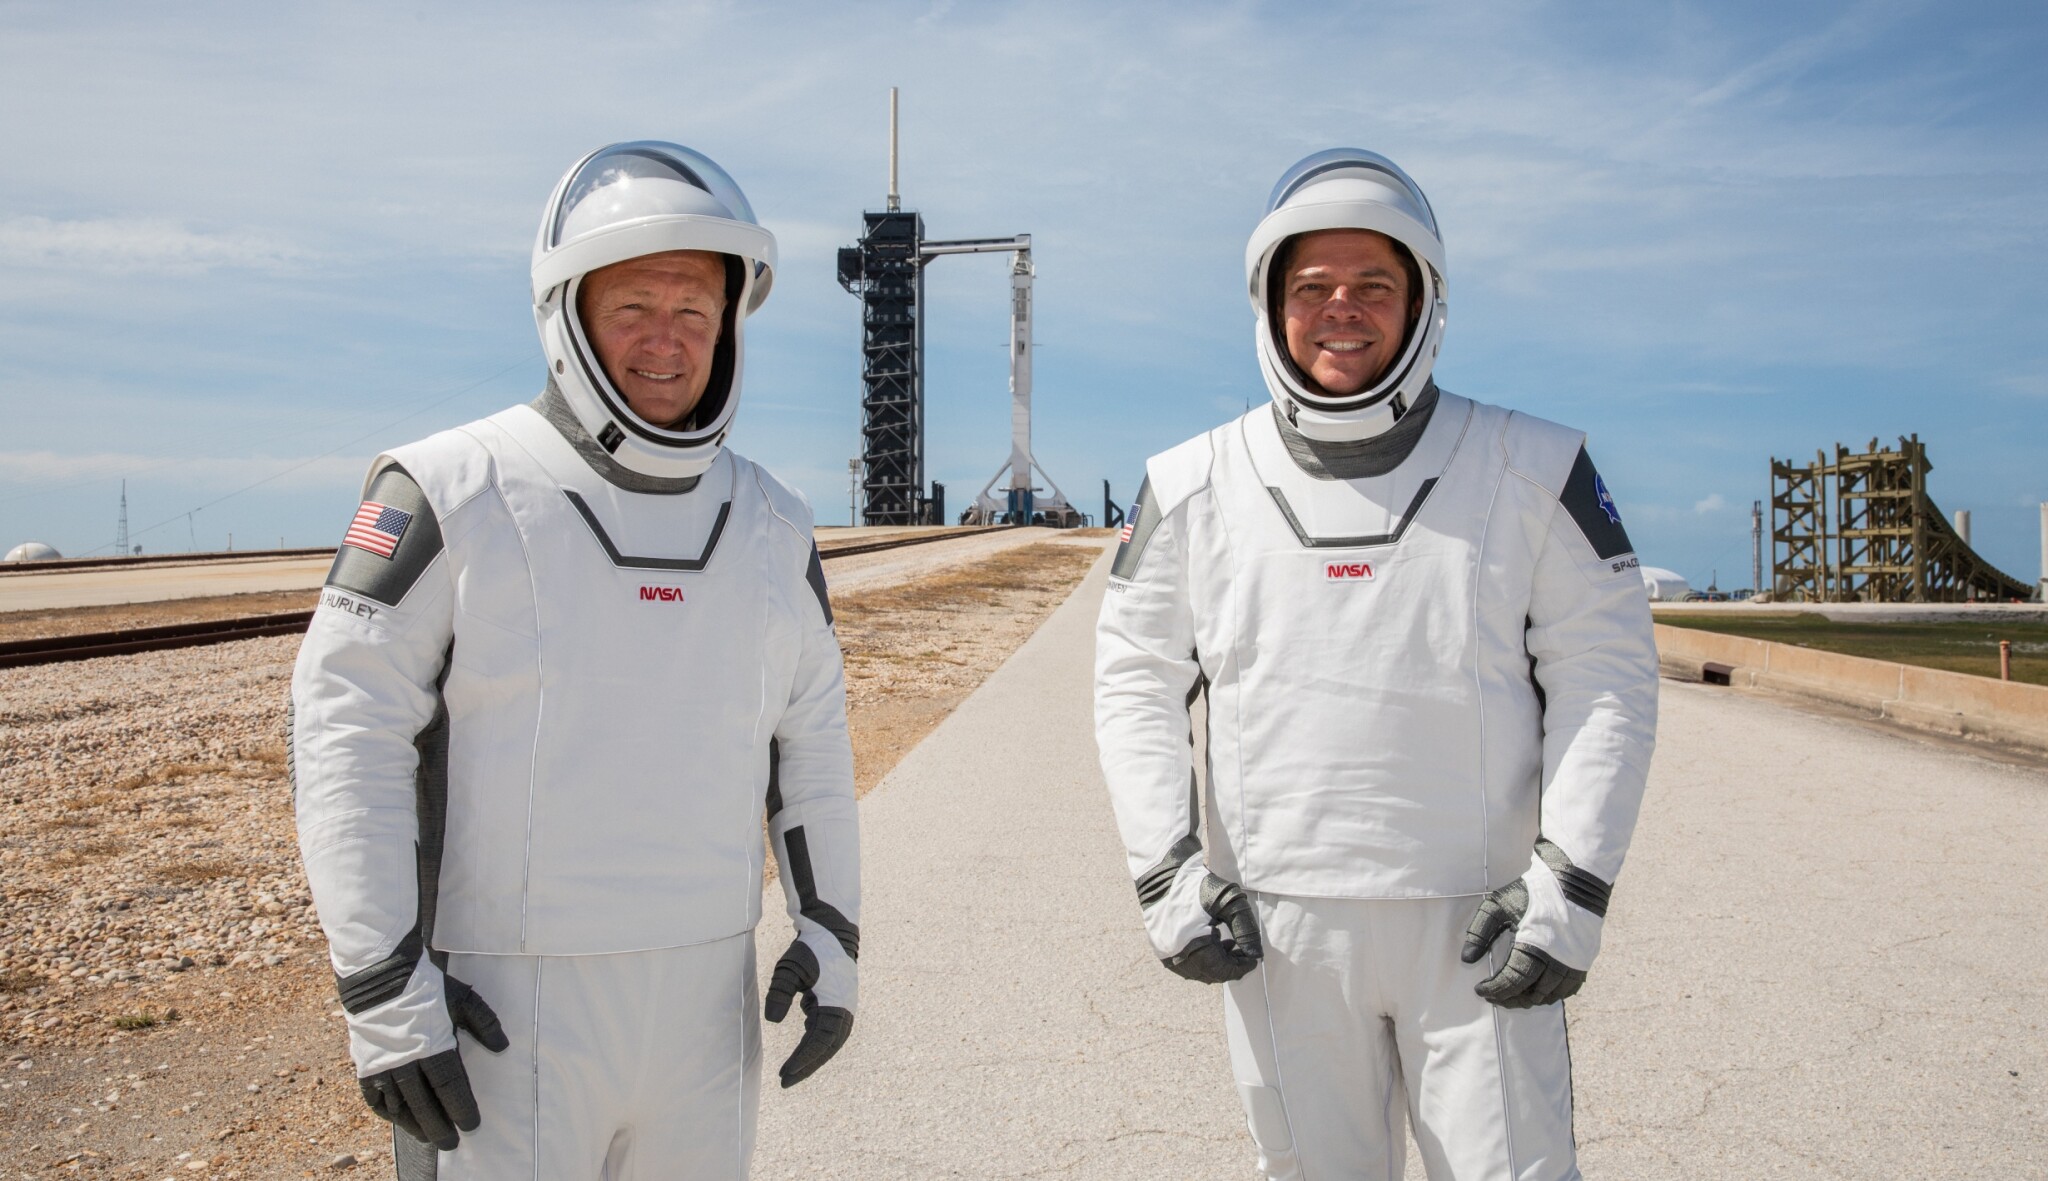 Muskovi astronauti mají skafandry jako Avengers. Chtějí v dětech vzbudit zájem o vesmír